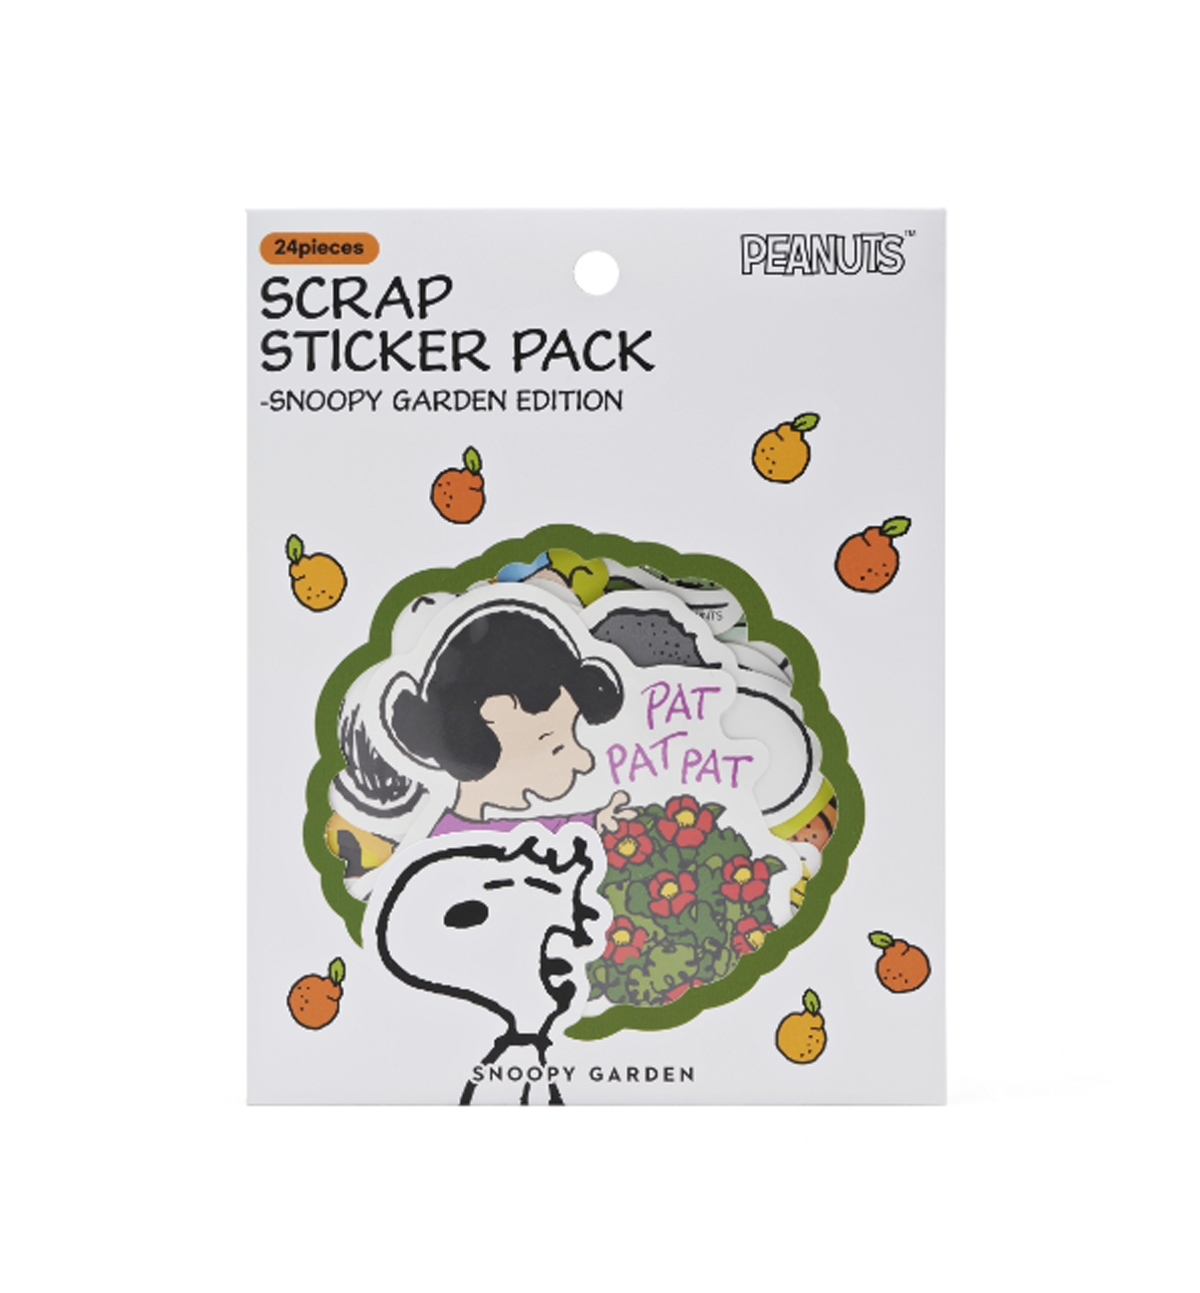 Peanuts "Snoopy Garden Edition" Scrap Sticker Pack [24 Pieces]